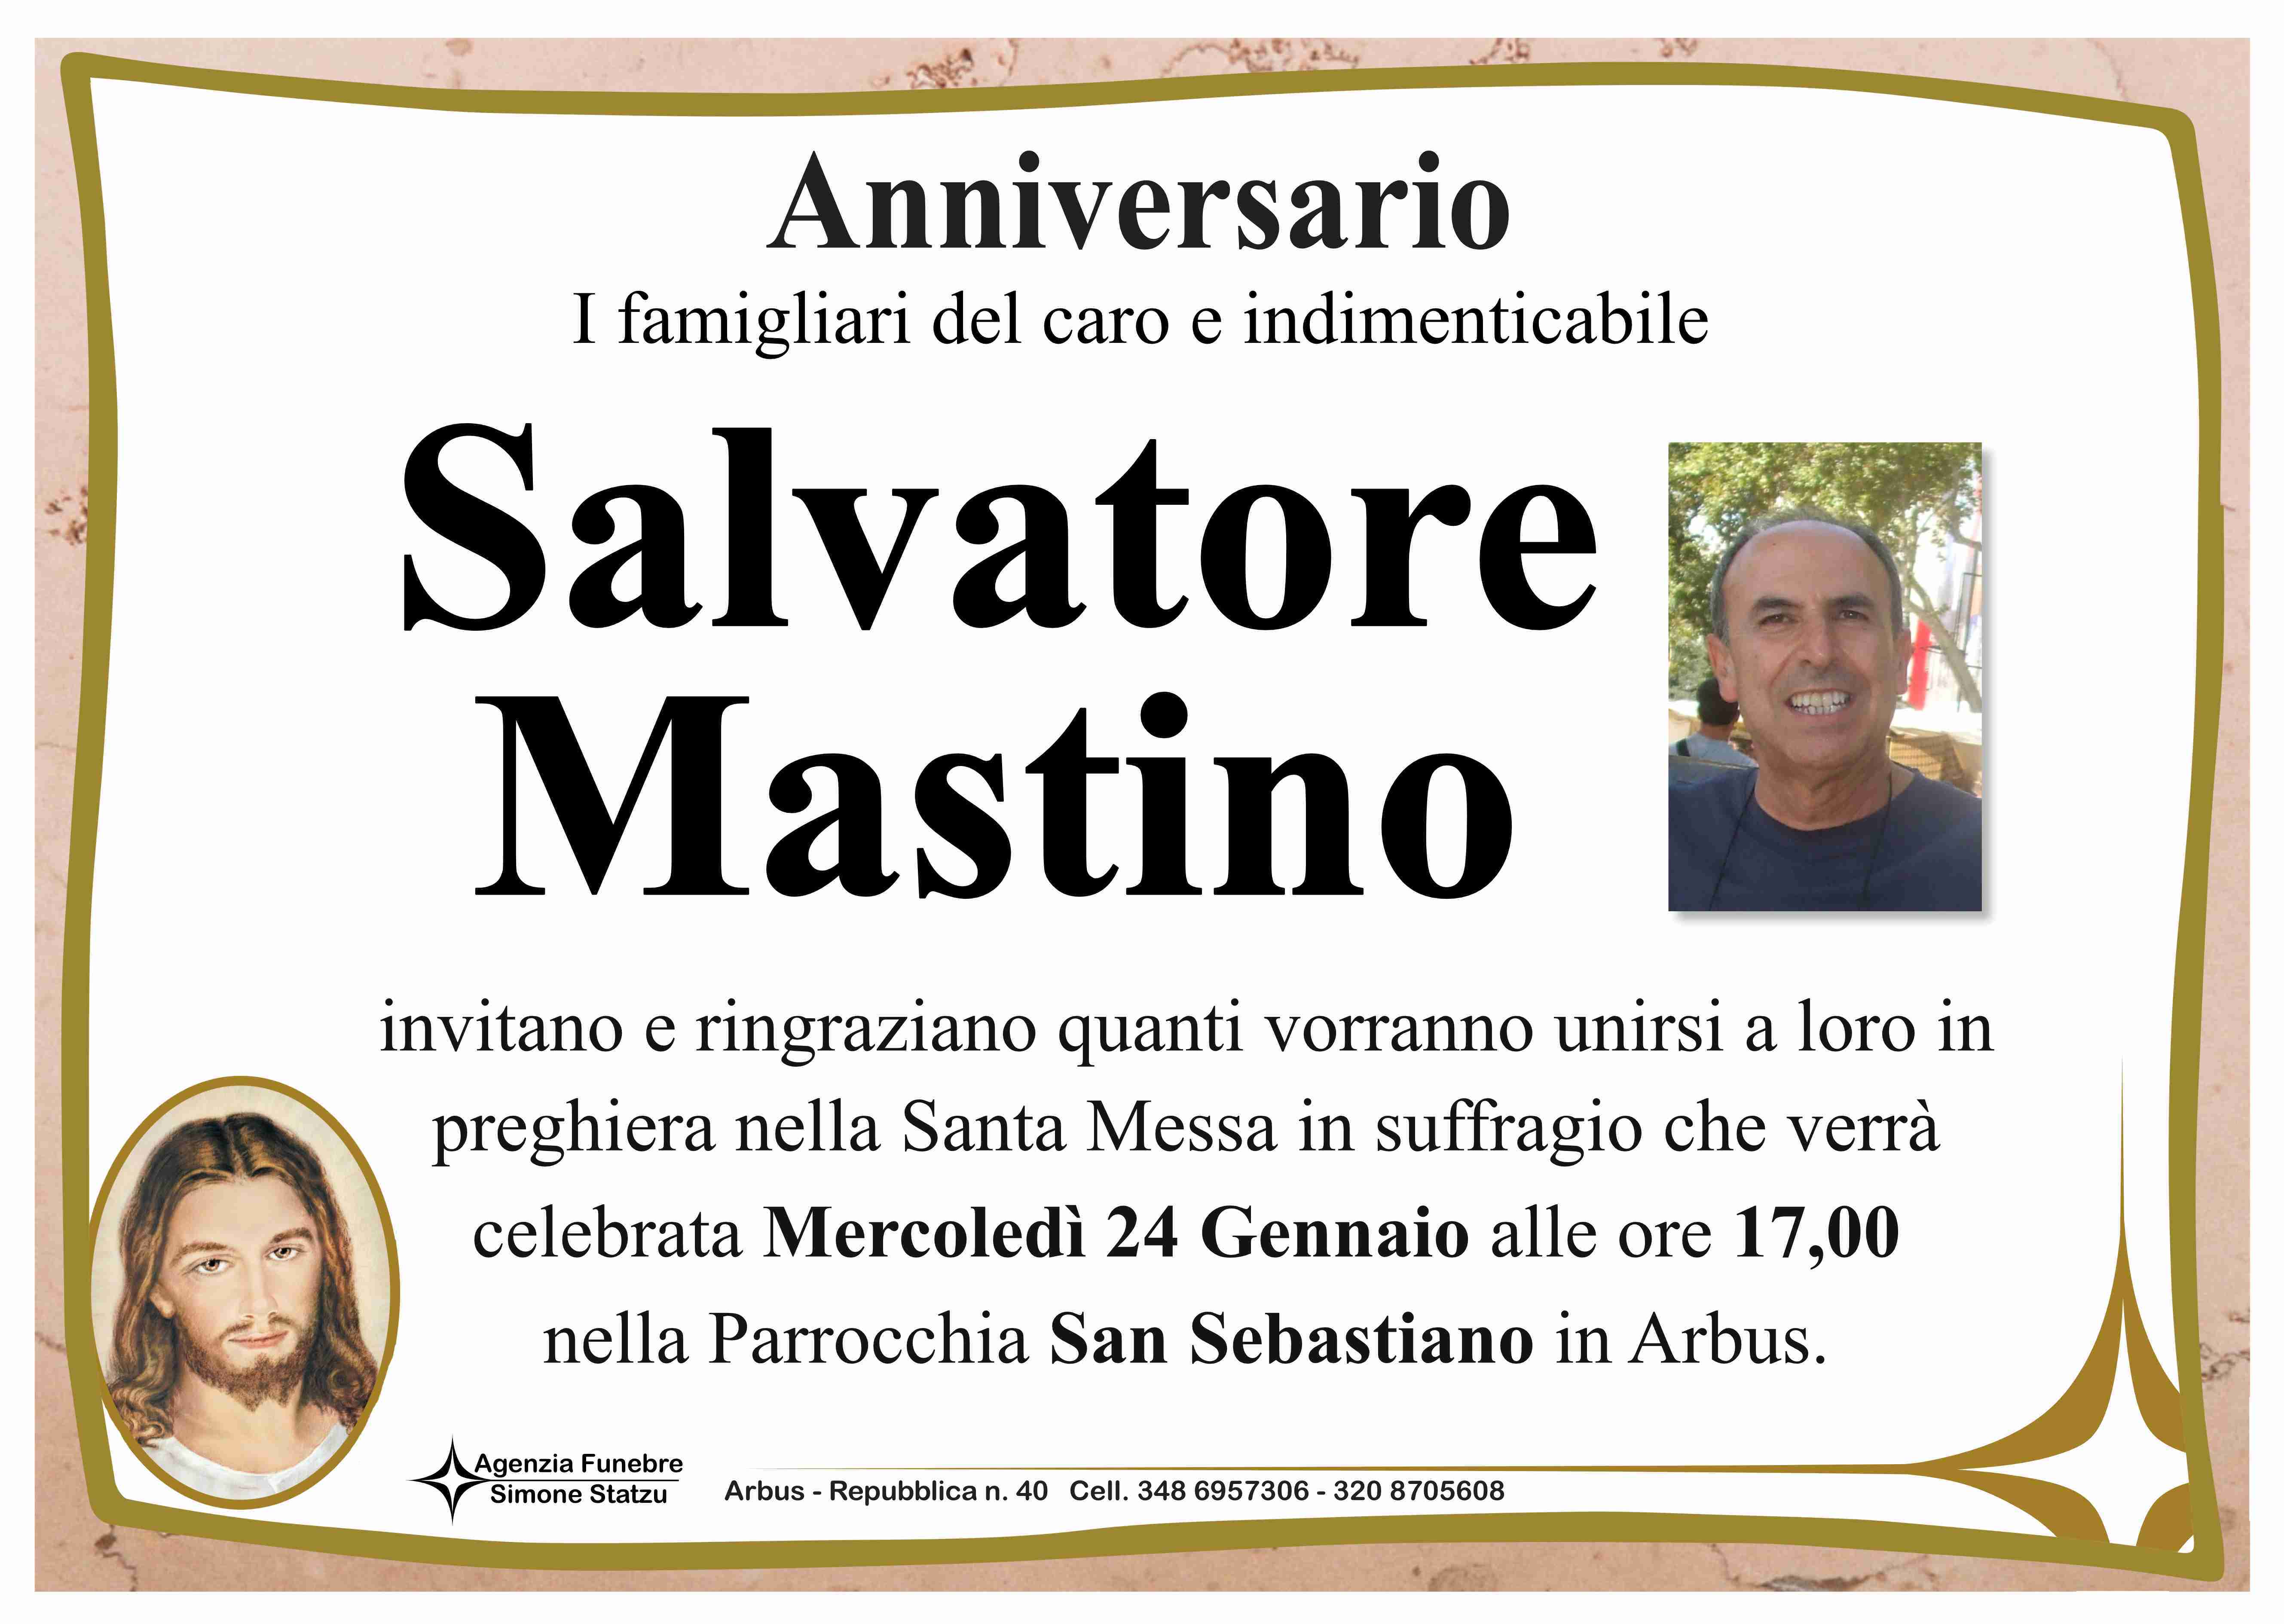 Salvatore Mastino